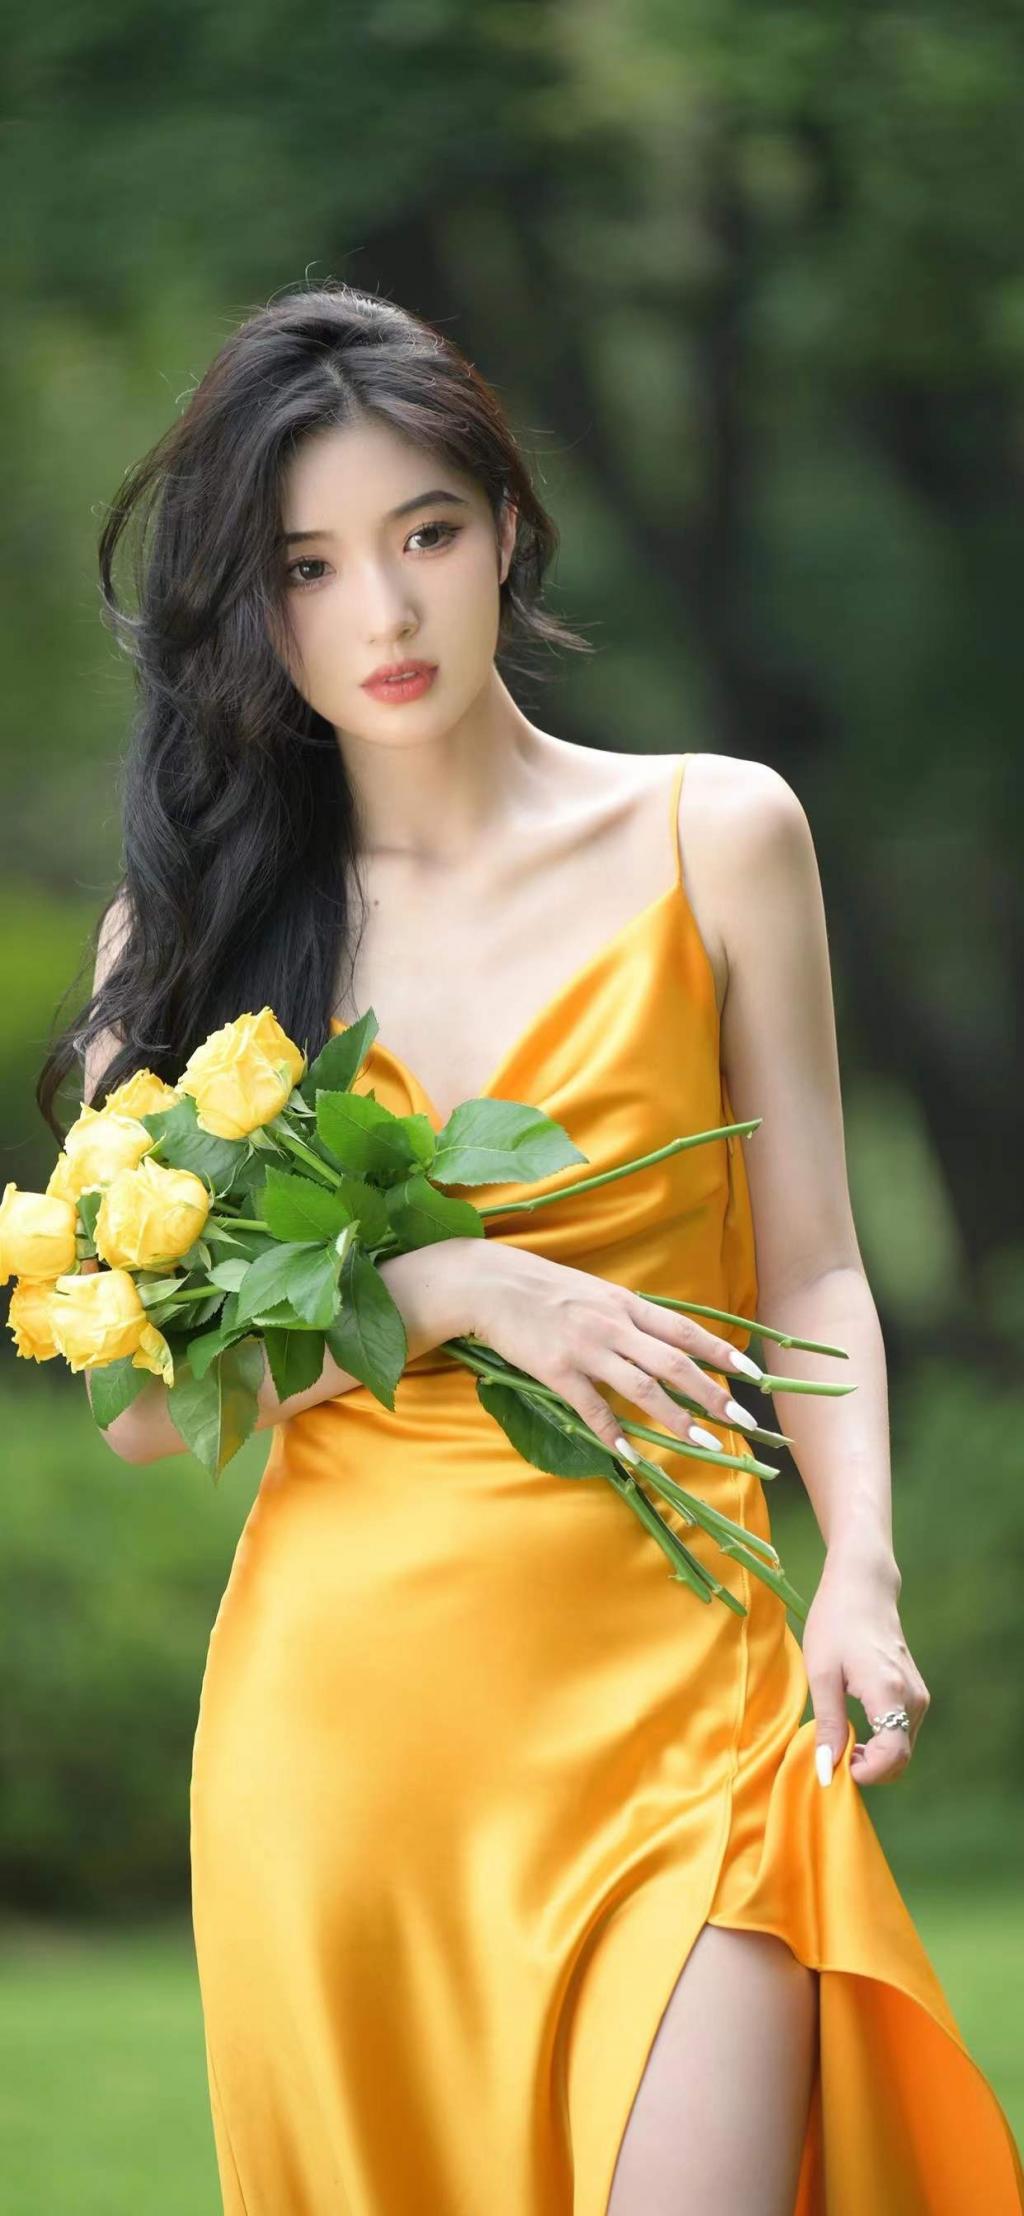 手持黄玫瑰的气质美女